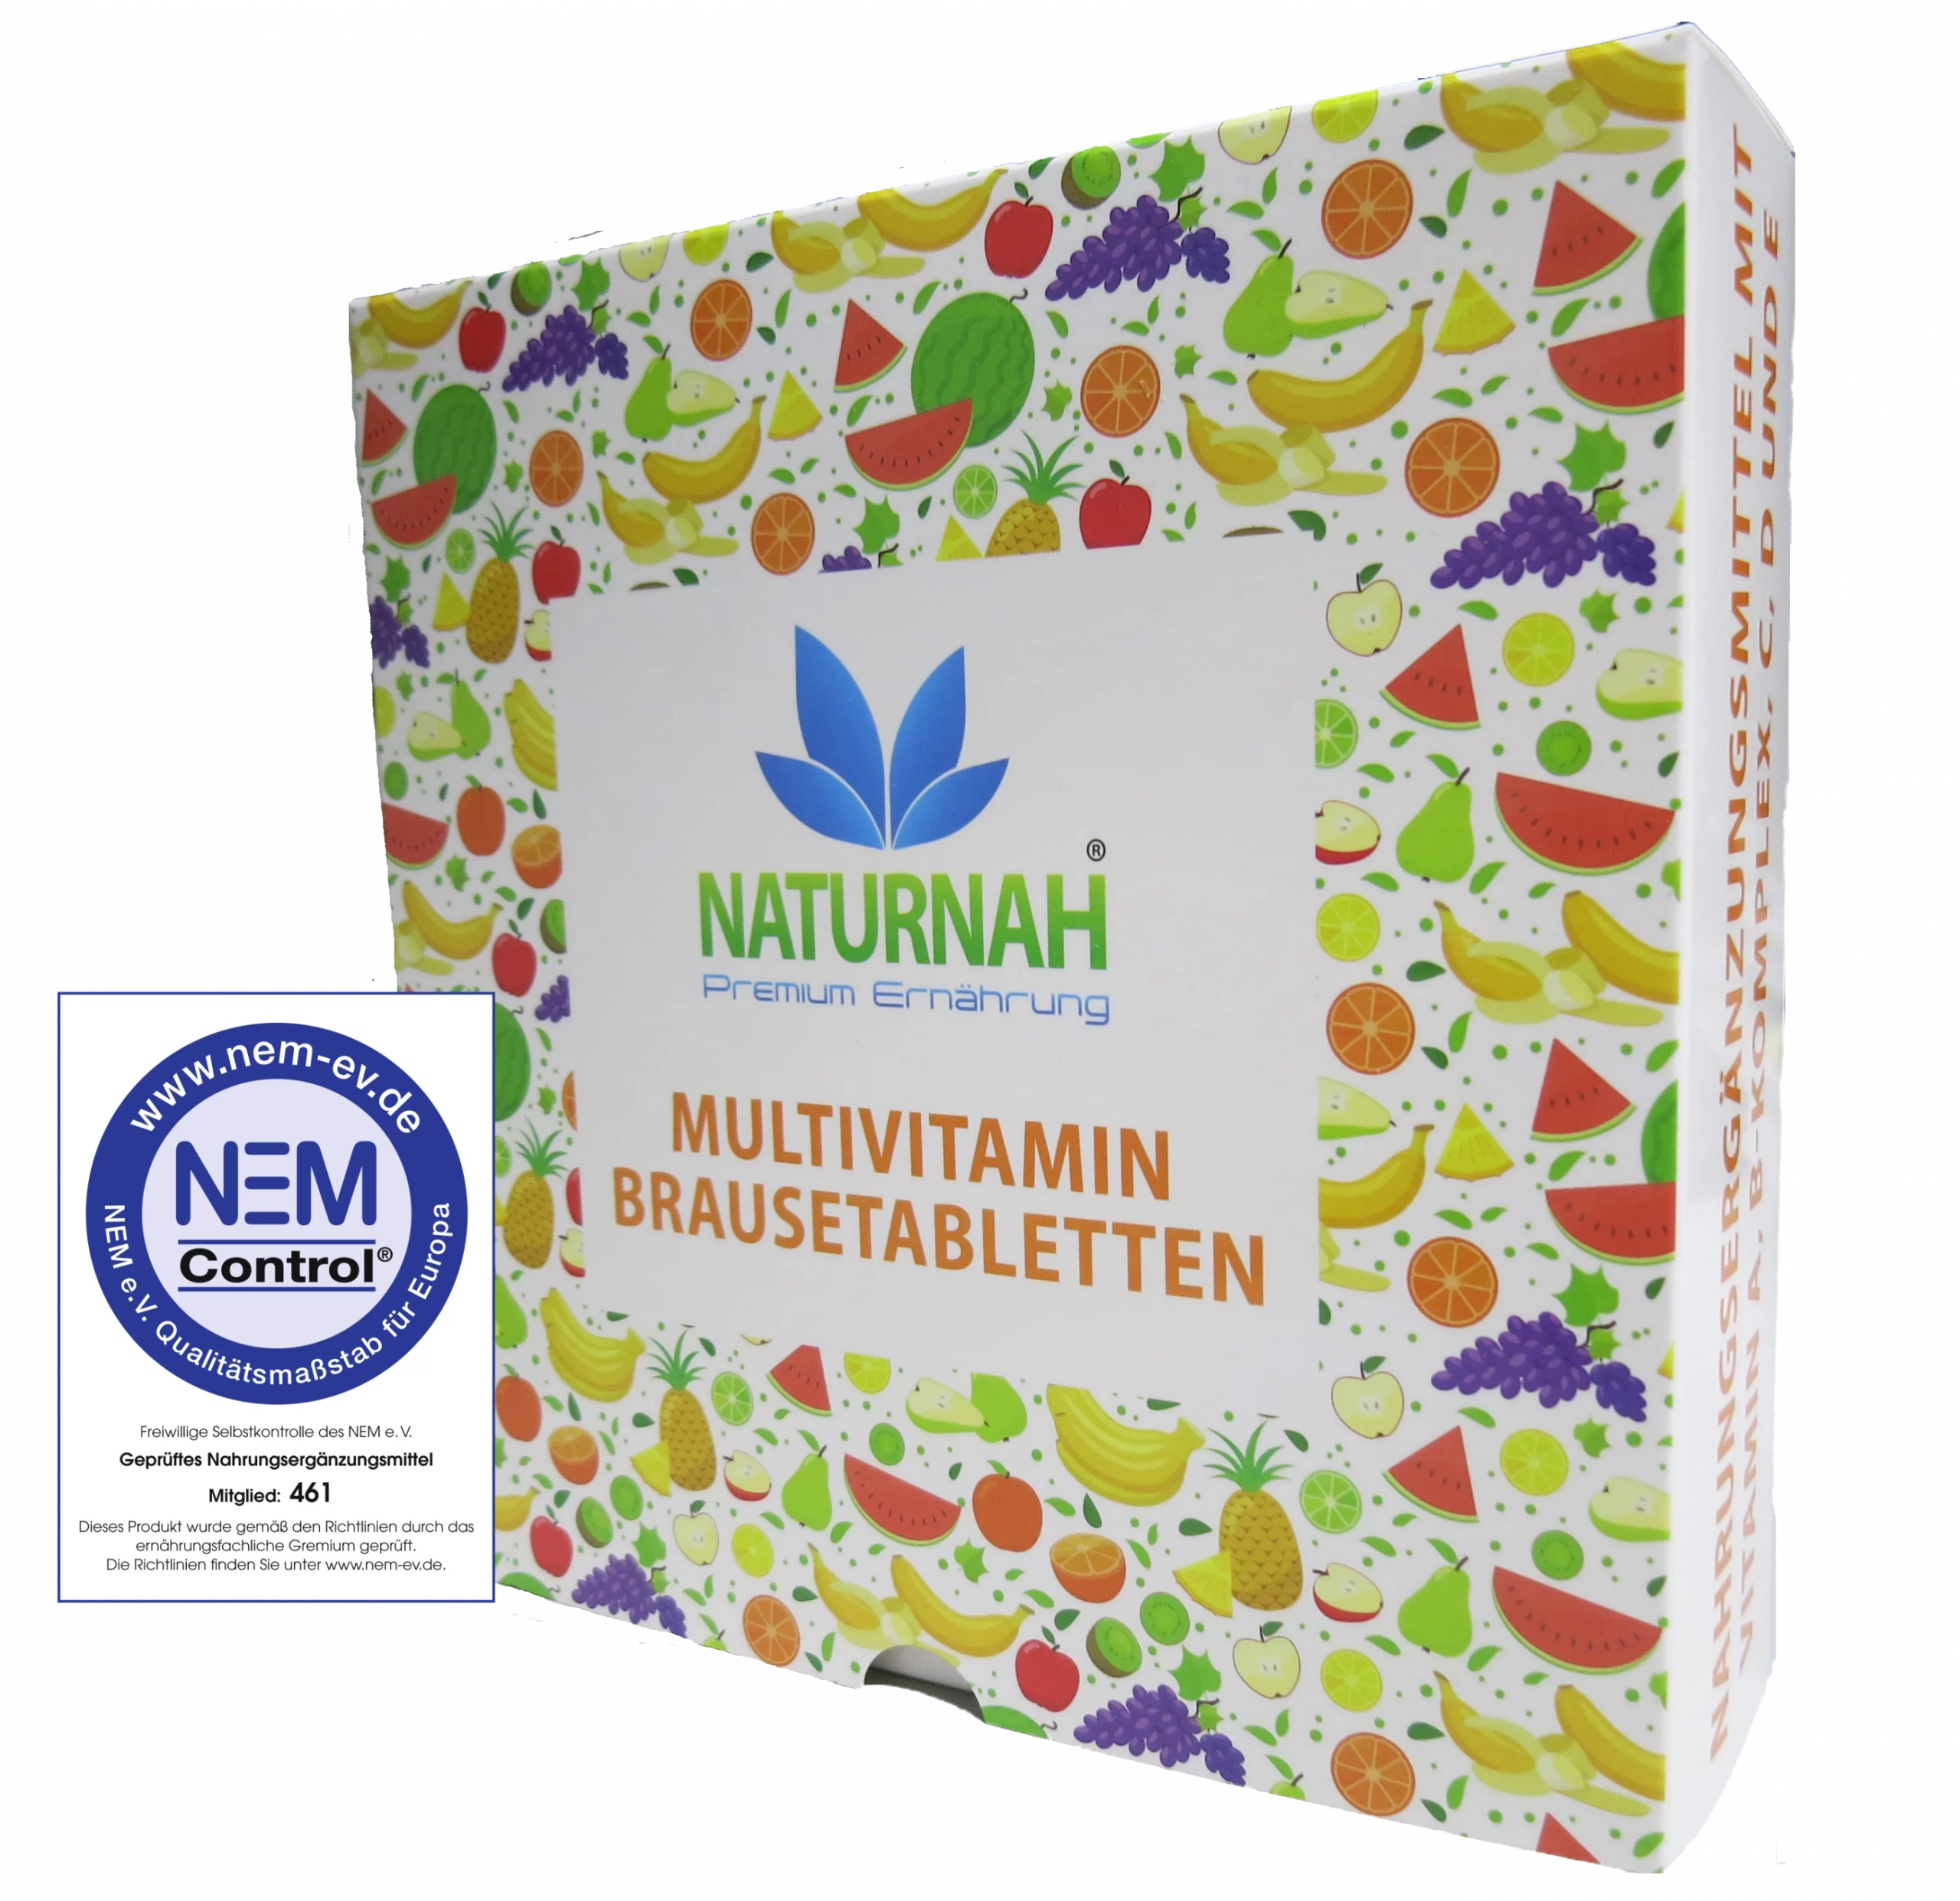 Multivitamin Brausetabletten von NATURNAH® - Premium Ernährung eine Marke der 2N-Naturprodukte GmbH